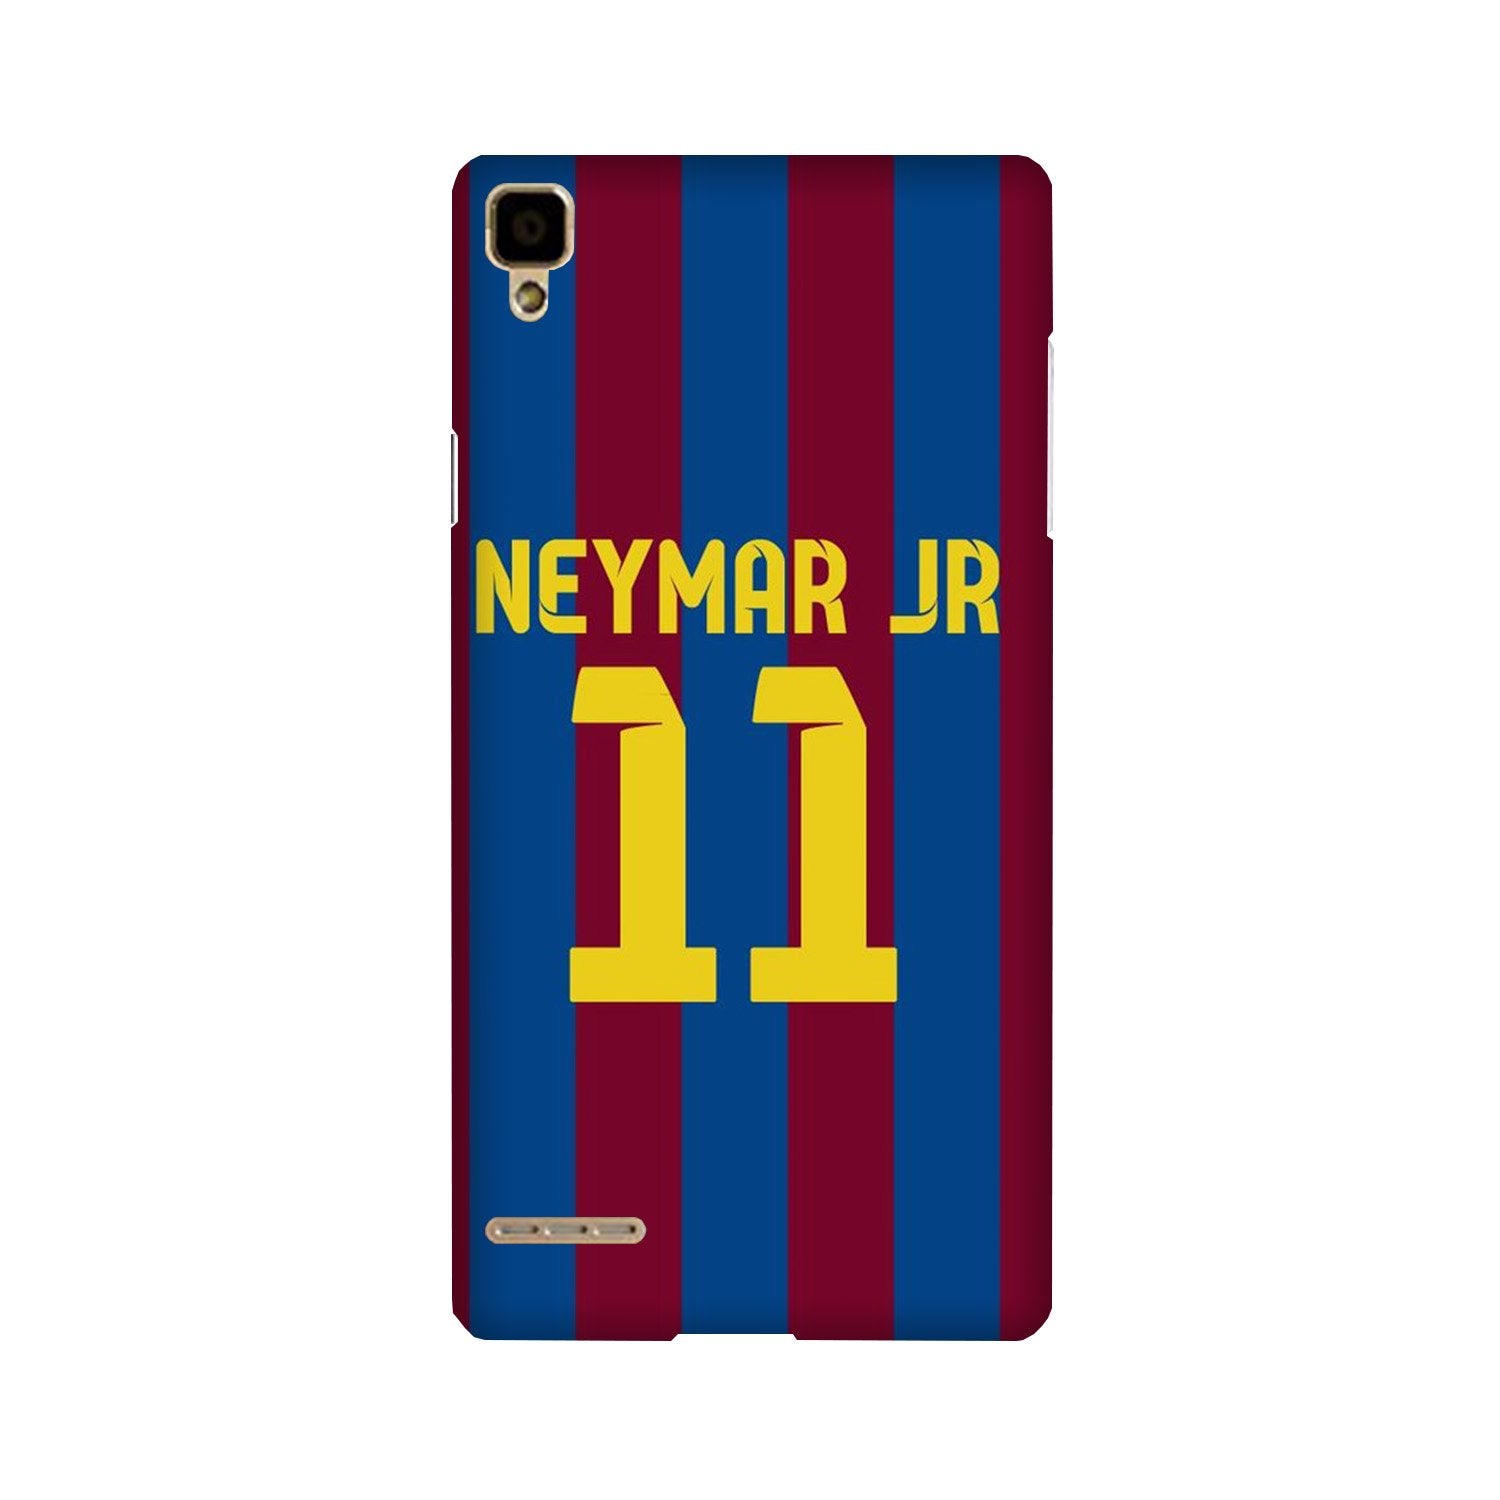 Neymar Jr Case for Oppo F1(Design - 162)